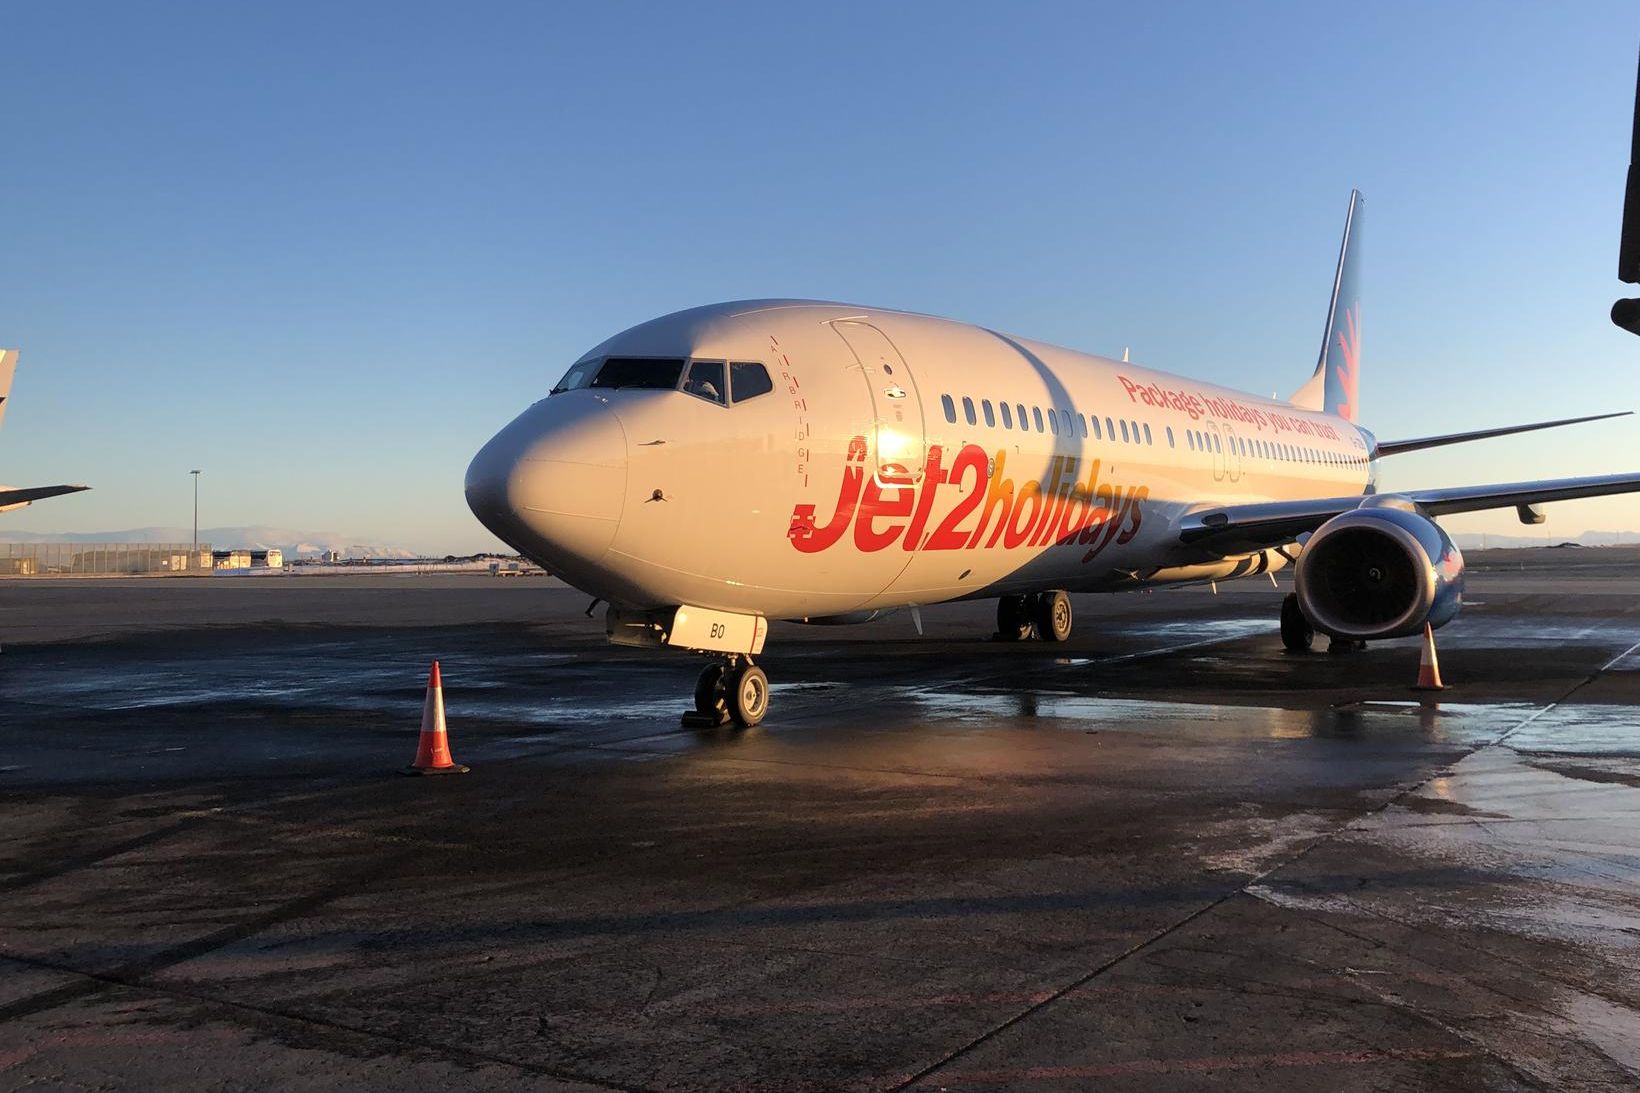 Frá fyrsta flugi Jet2.com til Keflavíkur 7. febrúar í fyrra.